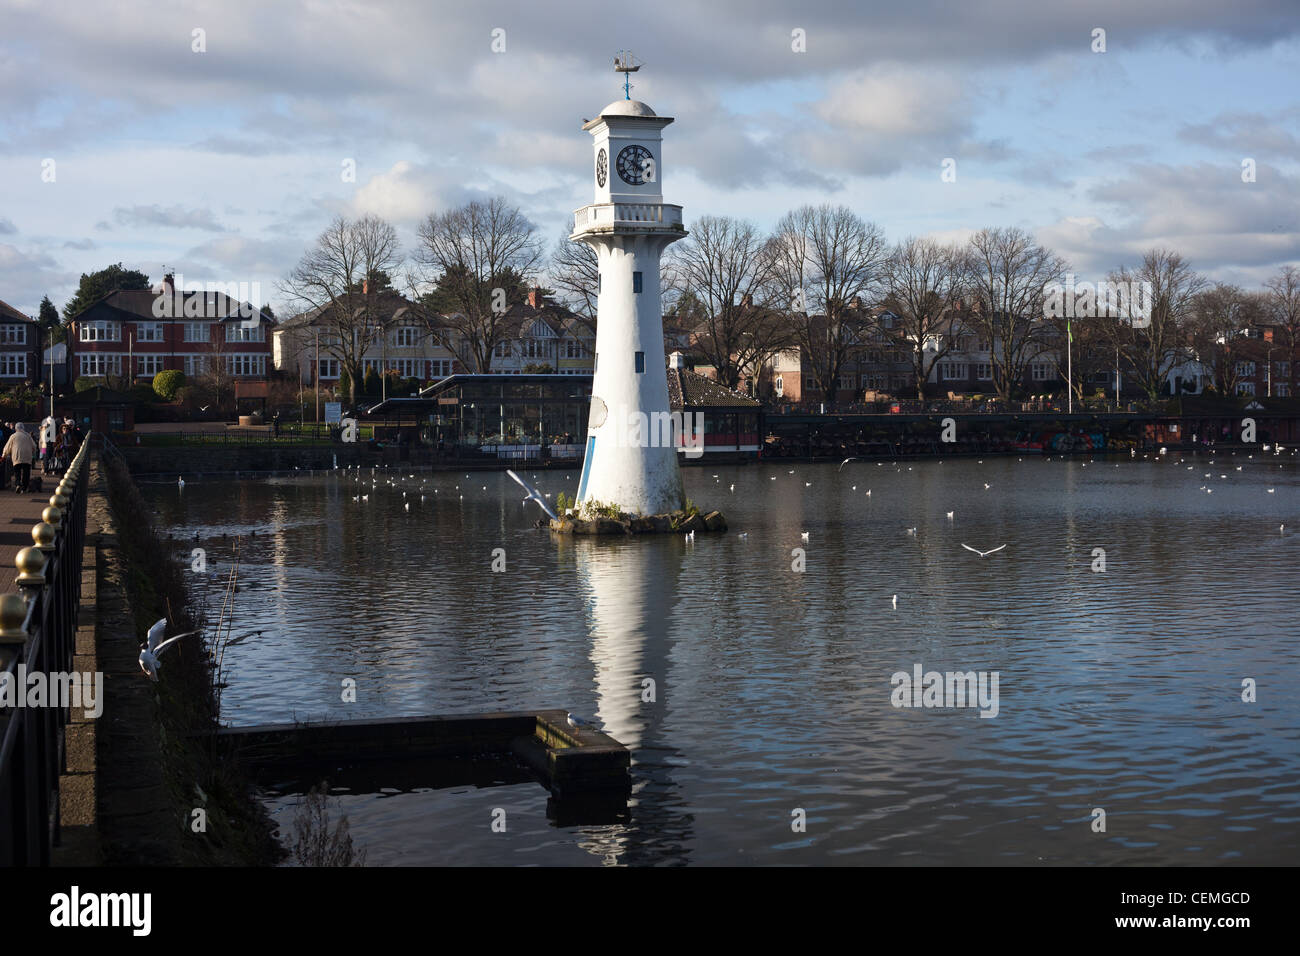 Torre del reloj en memoria del Capitán Scott en Roath Park lago con botes, Cardiff, Gales, Reino Unido, Foto de stock